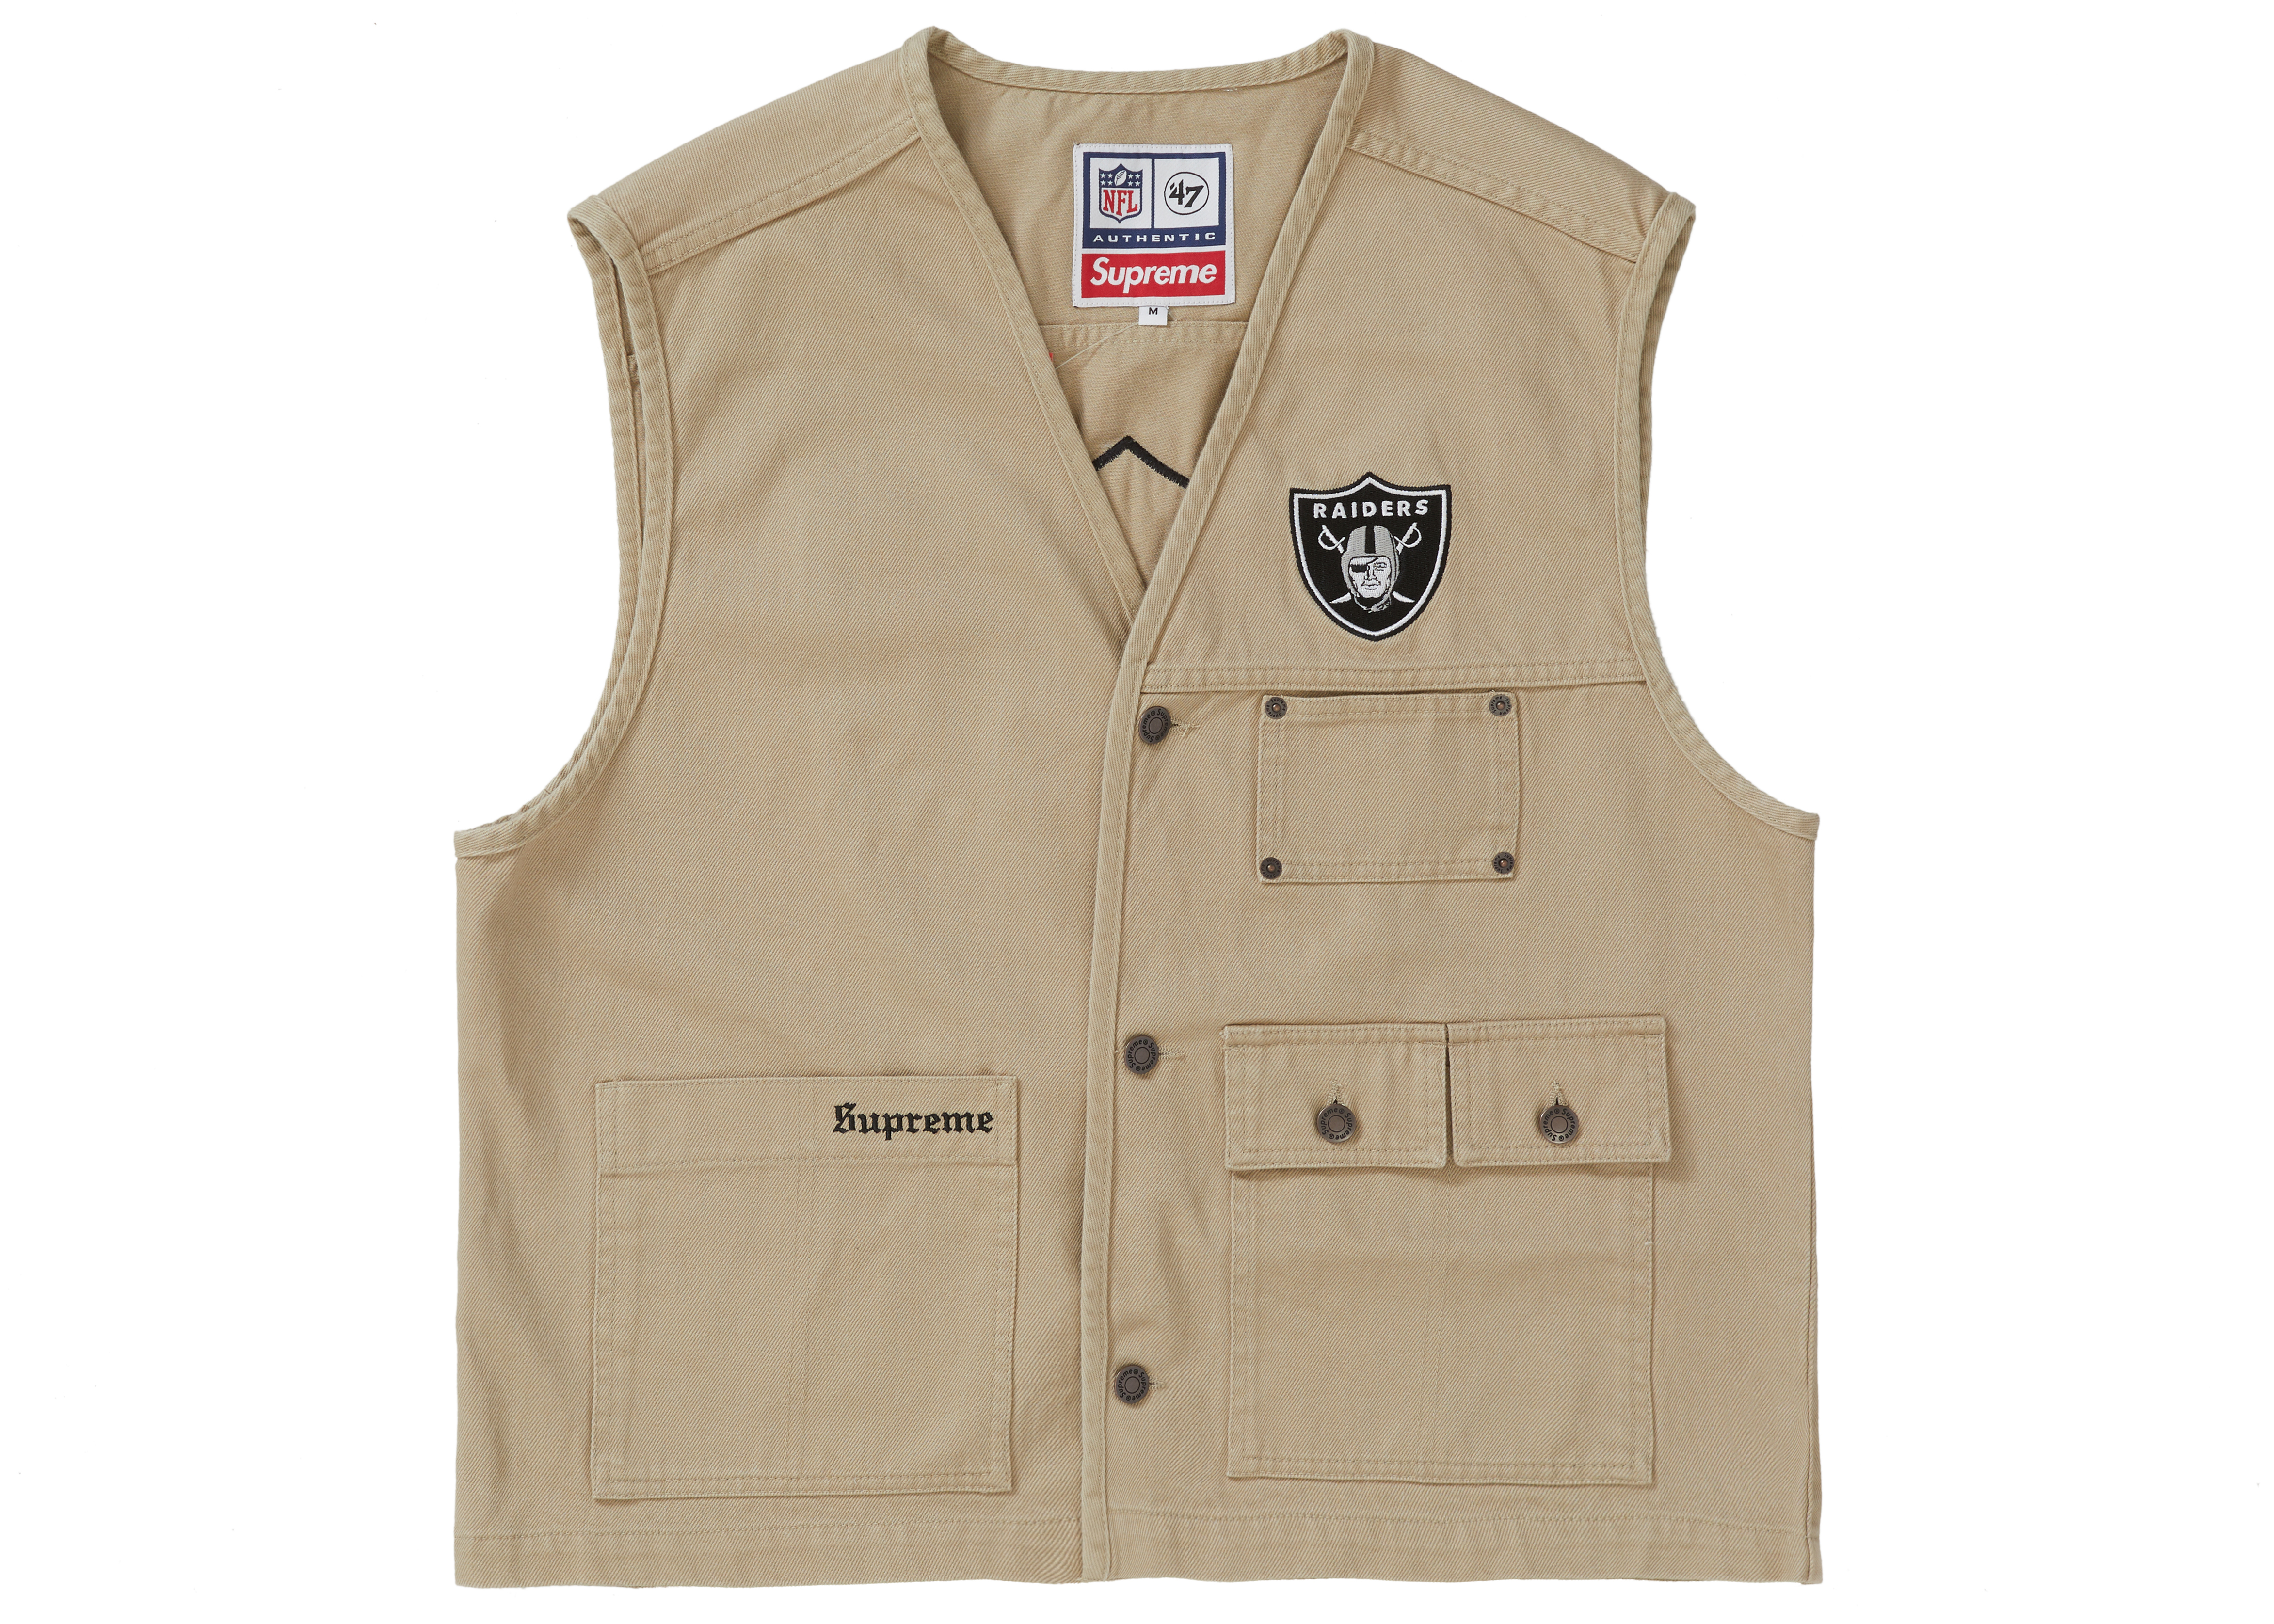 Supreme NFL x Raiders x '47 Denim Vest Khaki